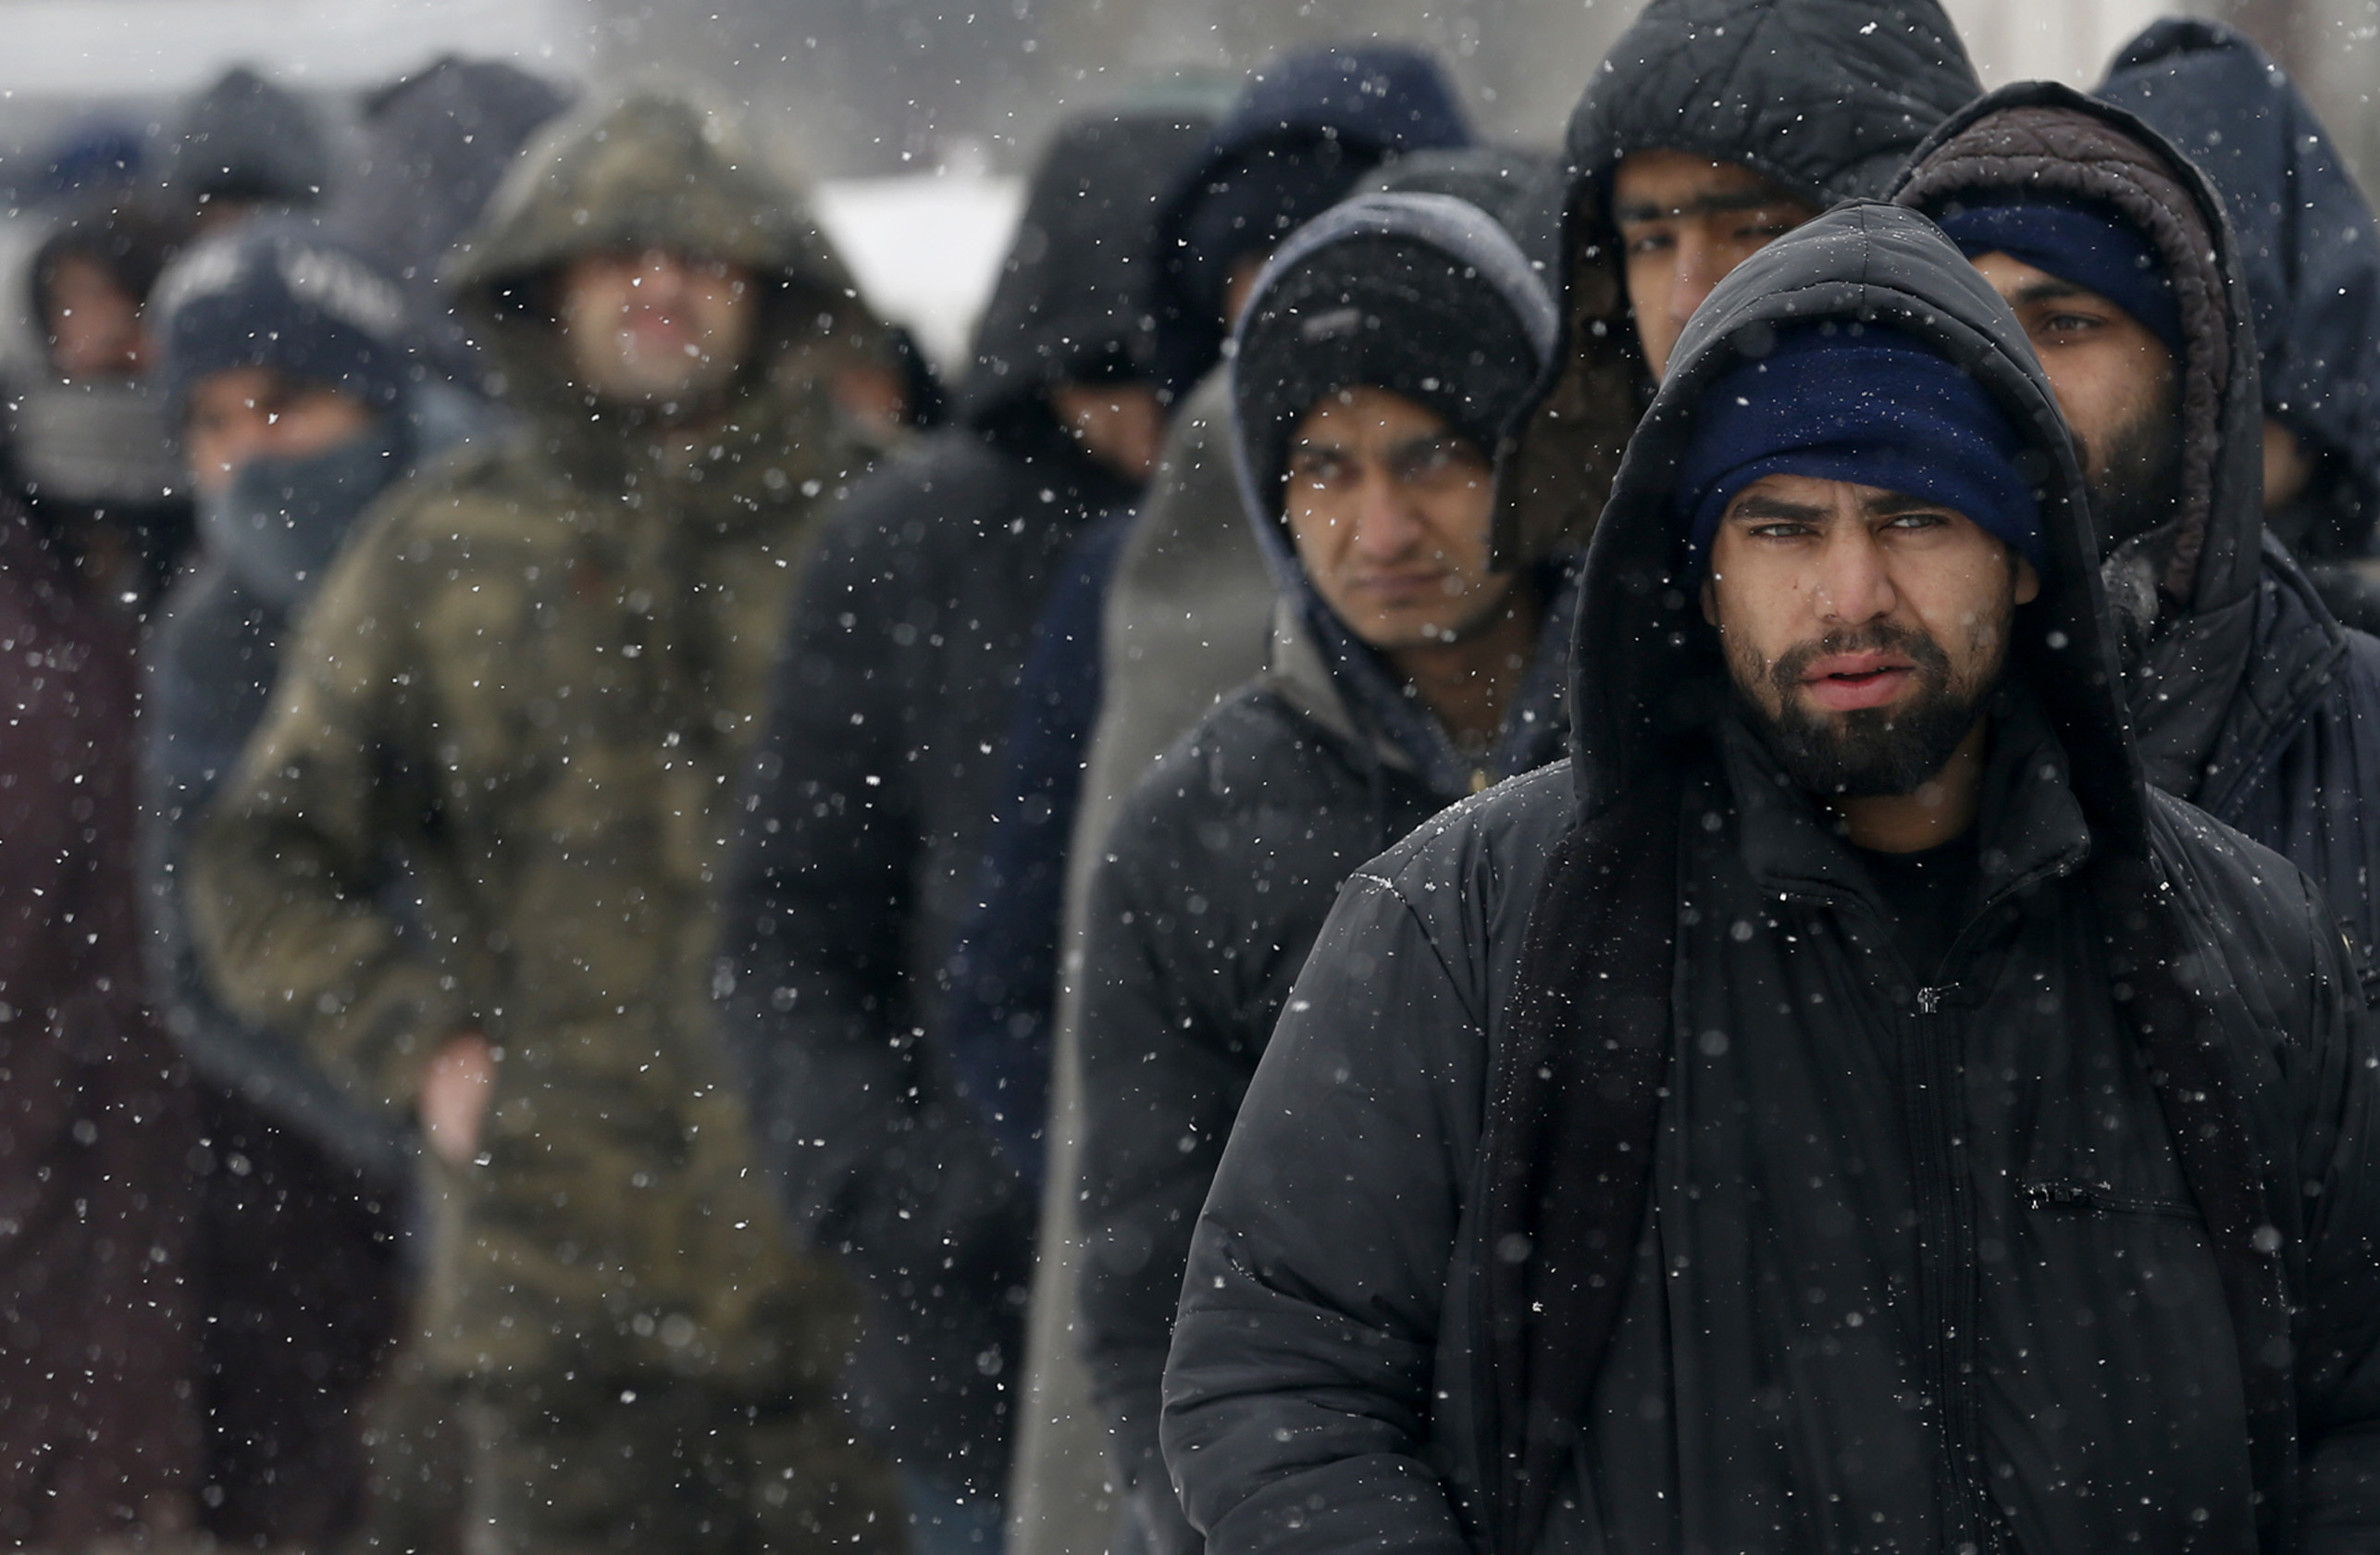 Мигранти се редят на опашка за храна пред изоставен склад в Белград